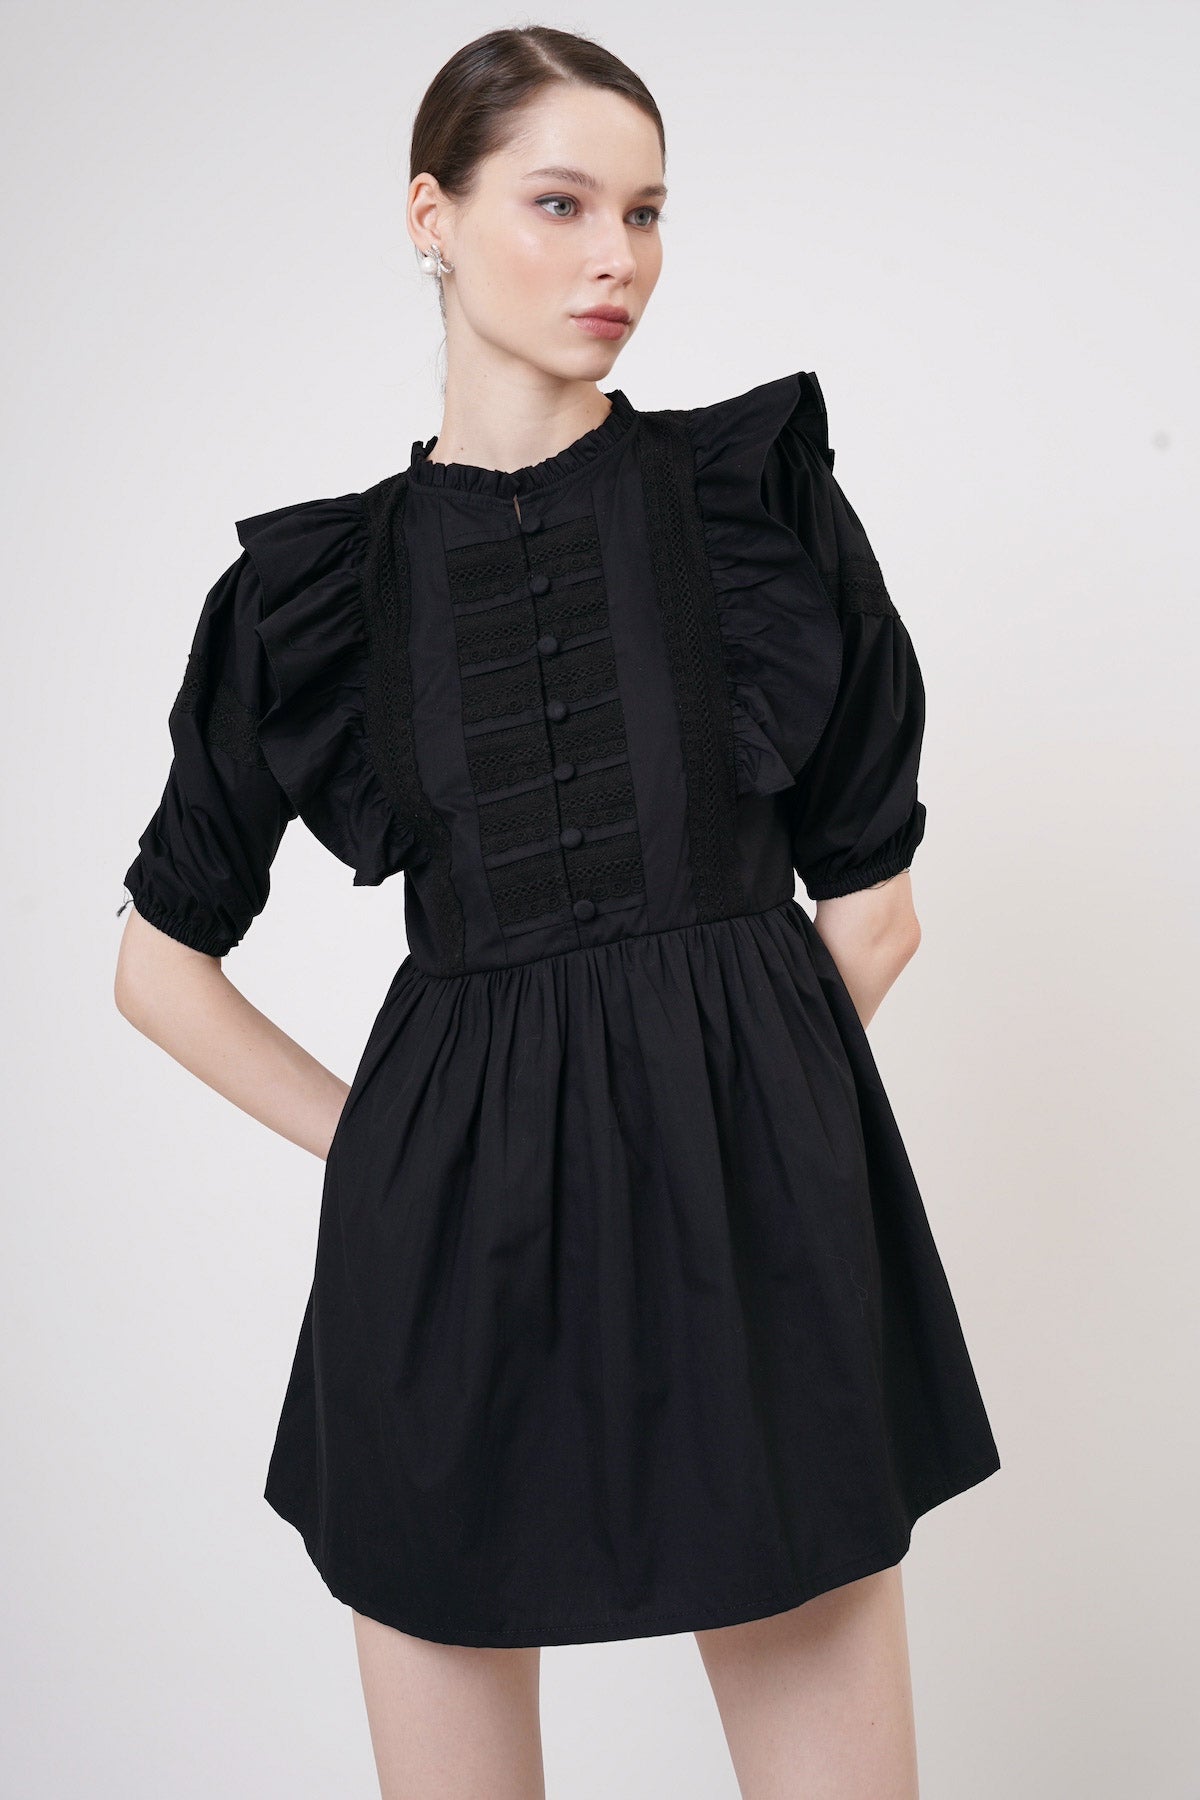 Daisy Lace Dress In Black (LAST PIECE)